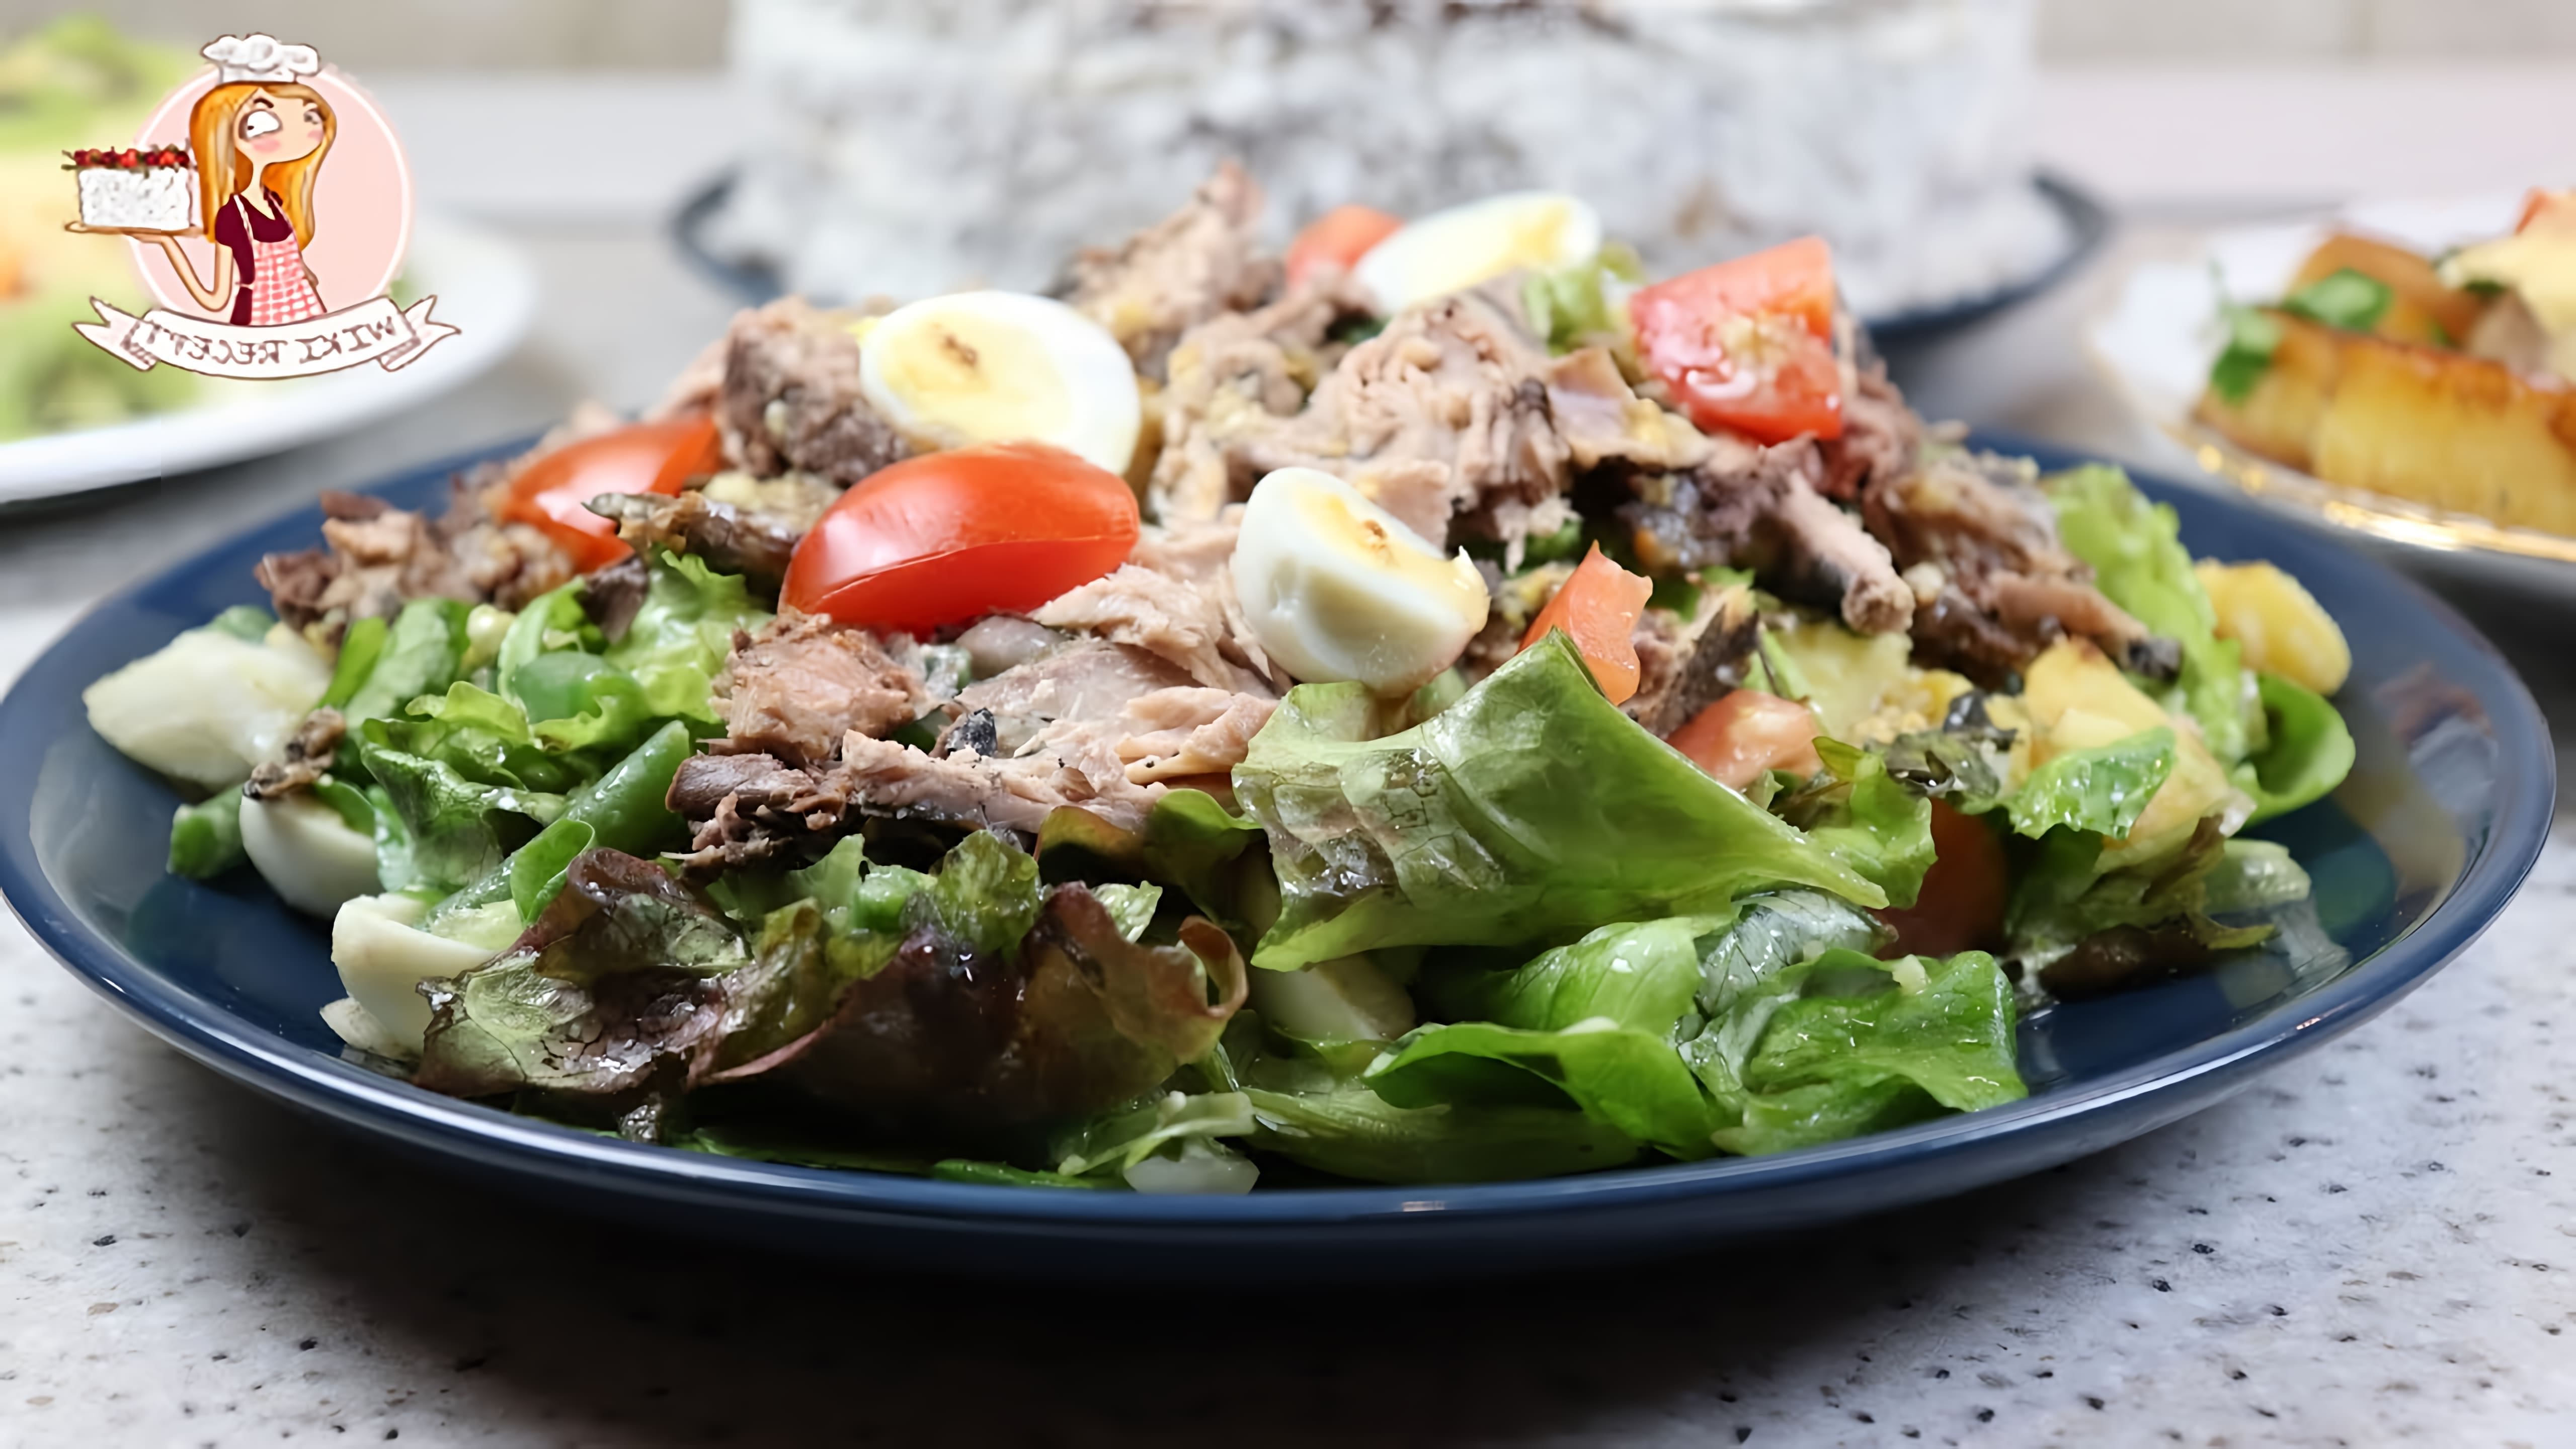 В этом видео демонстрируется рецепт приготовления салата "Нисуаз" с консервированным тунцом и овощами